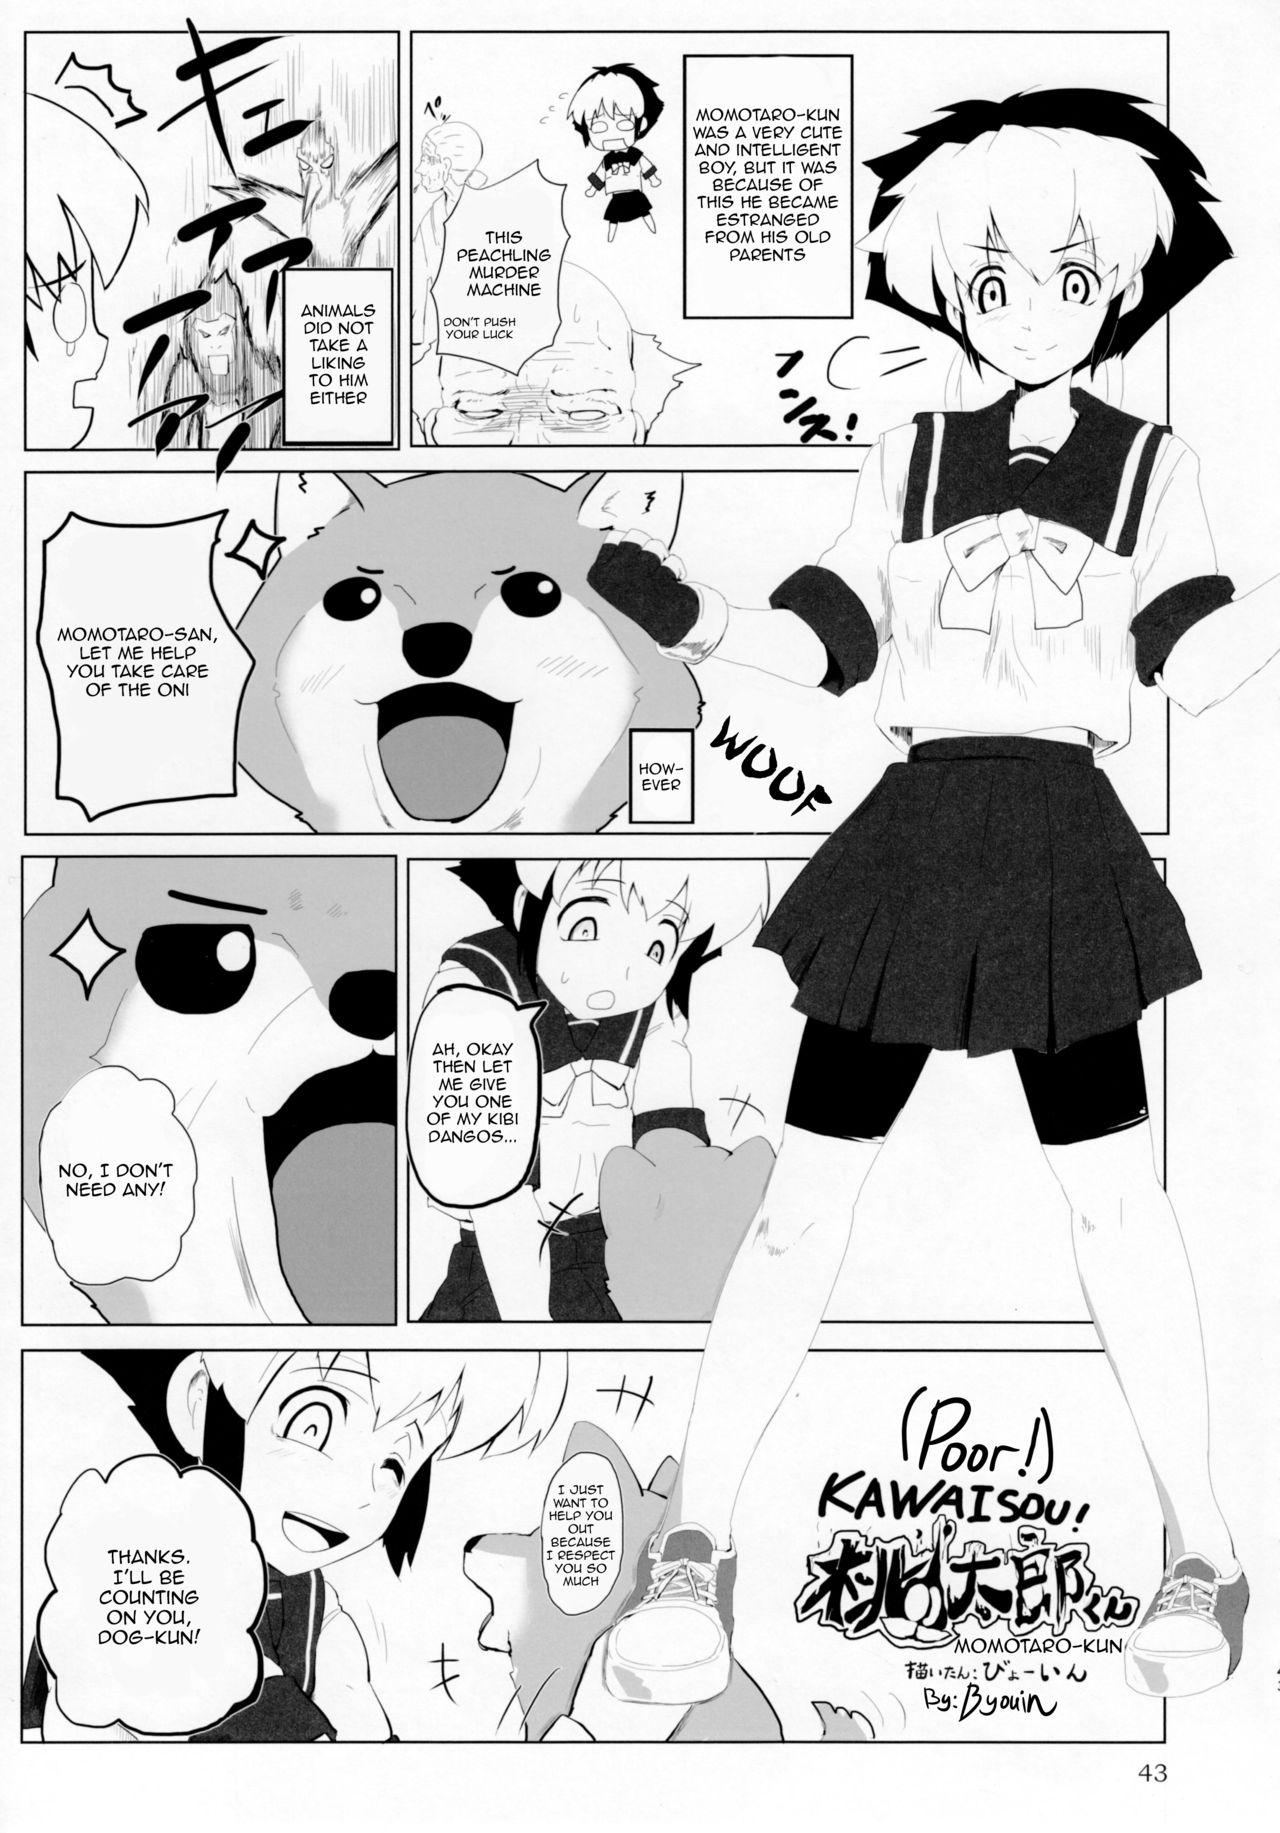 Gayfuck Poor! momotaro-kun Roundass - Page 1